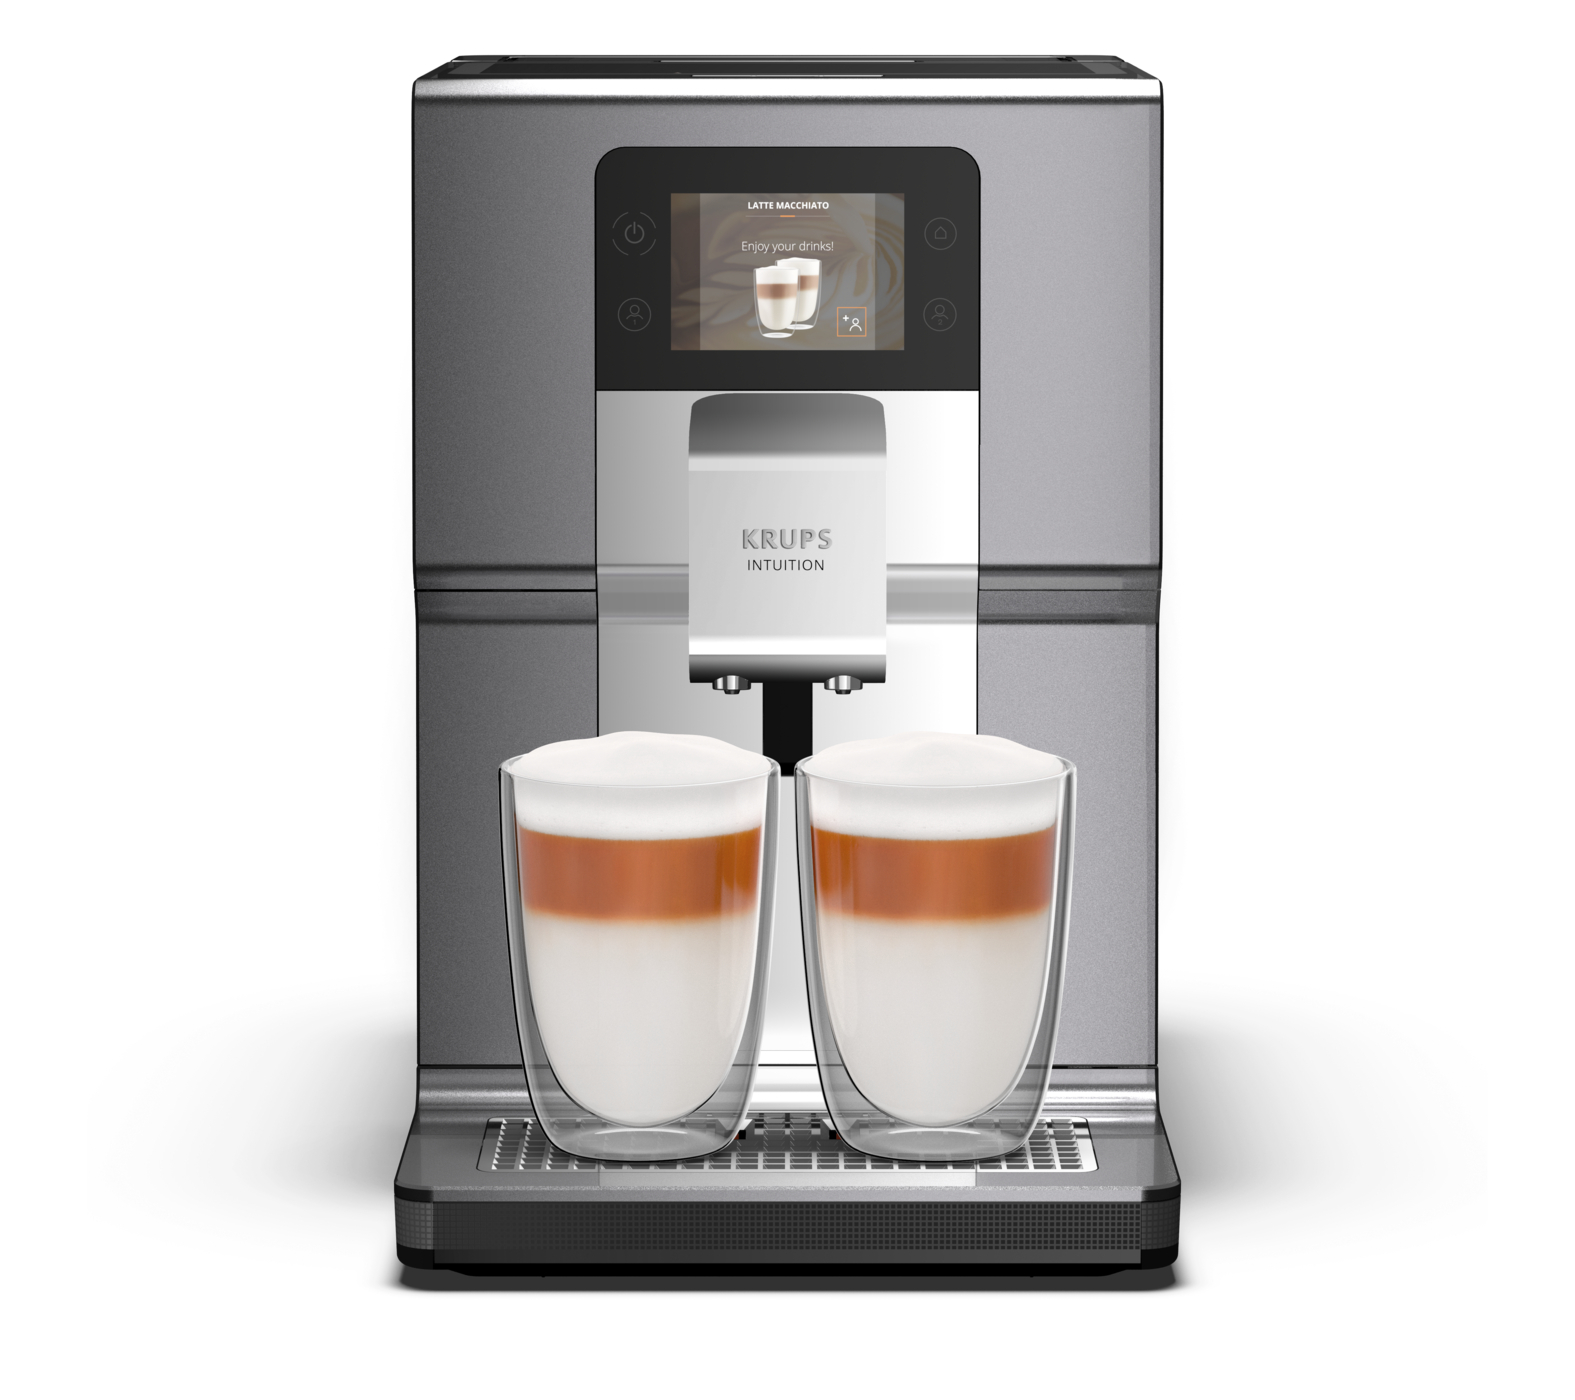 Автоматическая кофемашина Krups Intuition Preference+ EA875E10, цвет серебристый